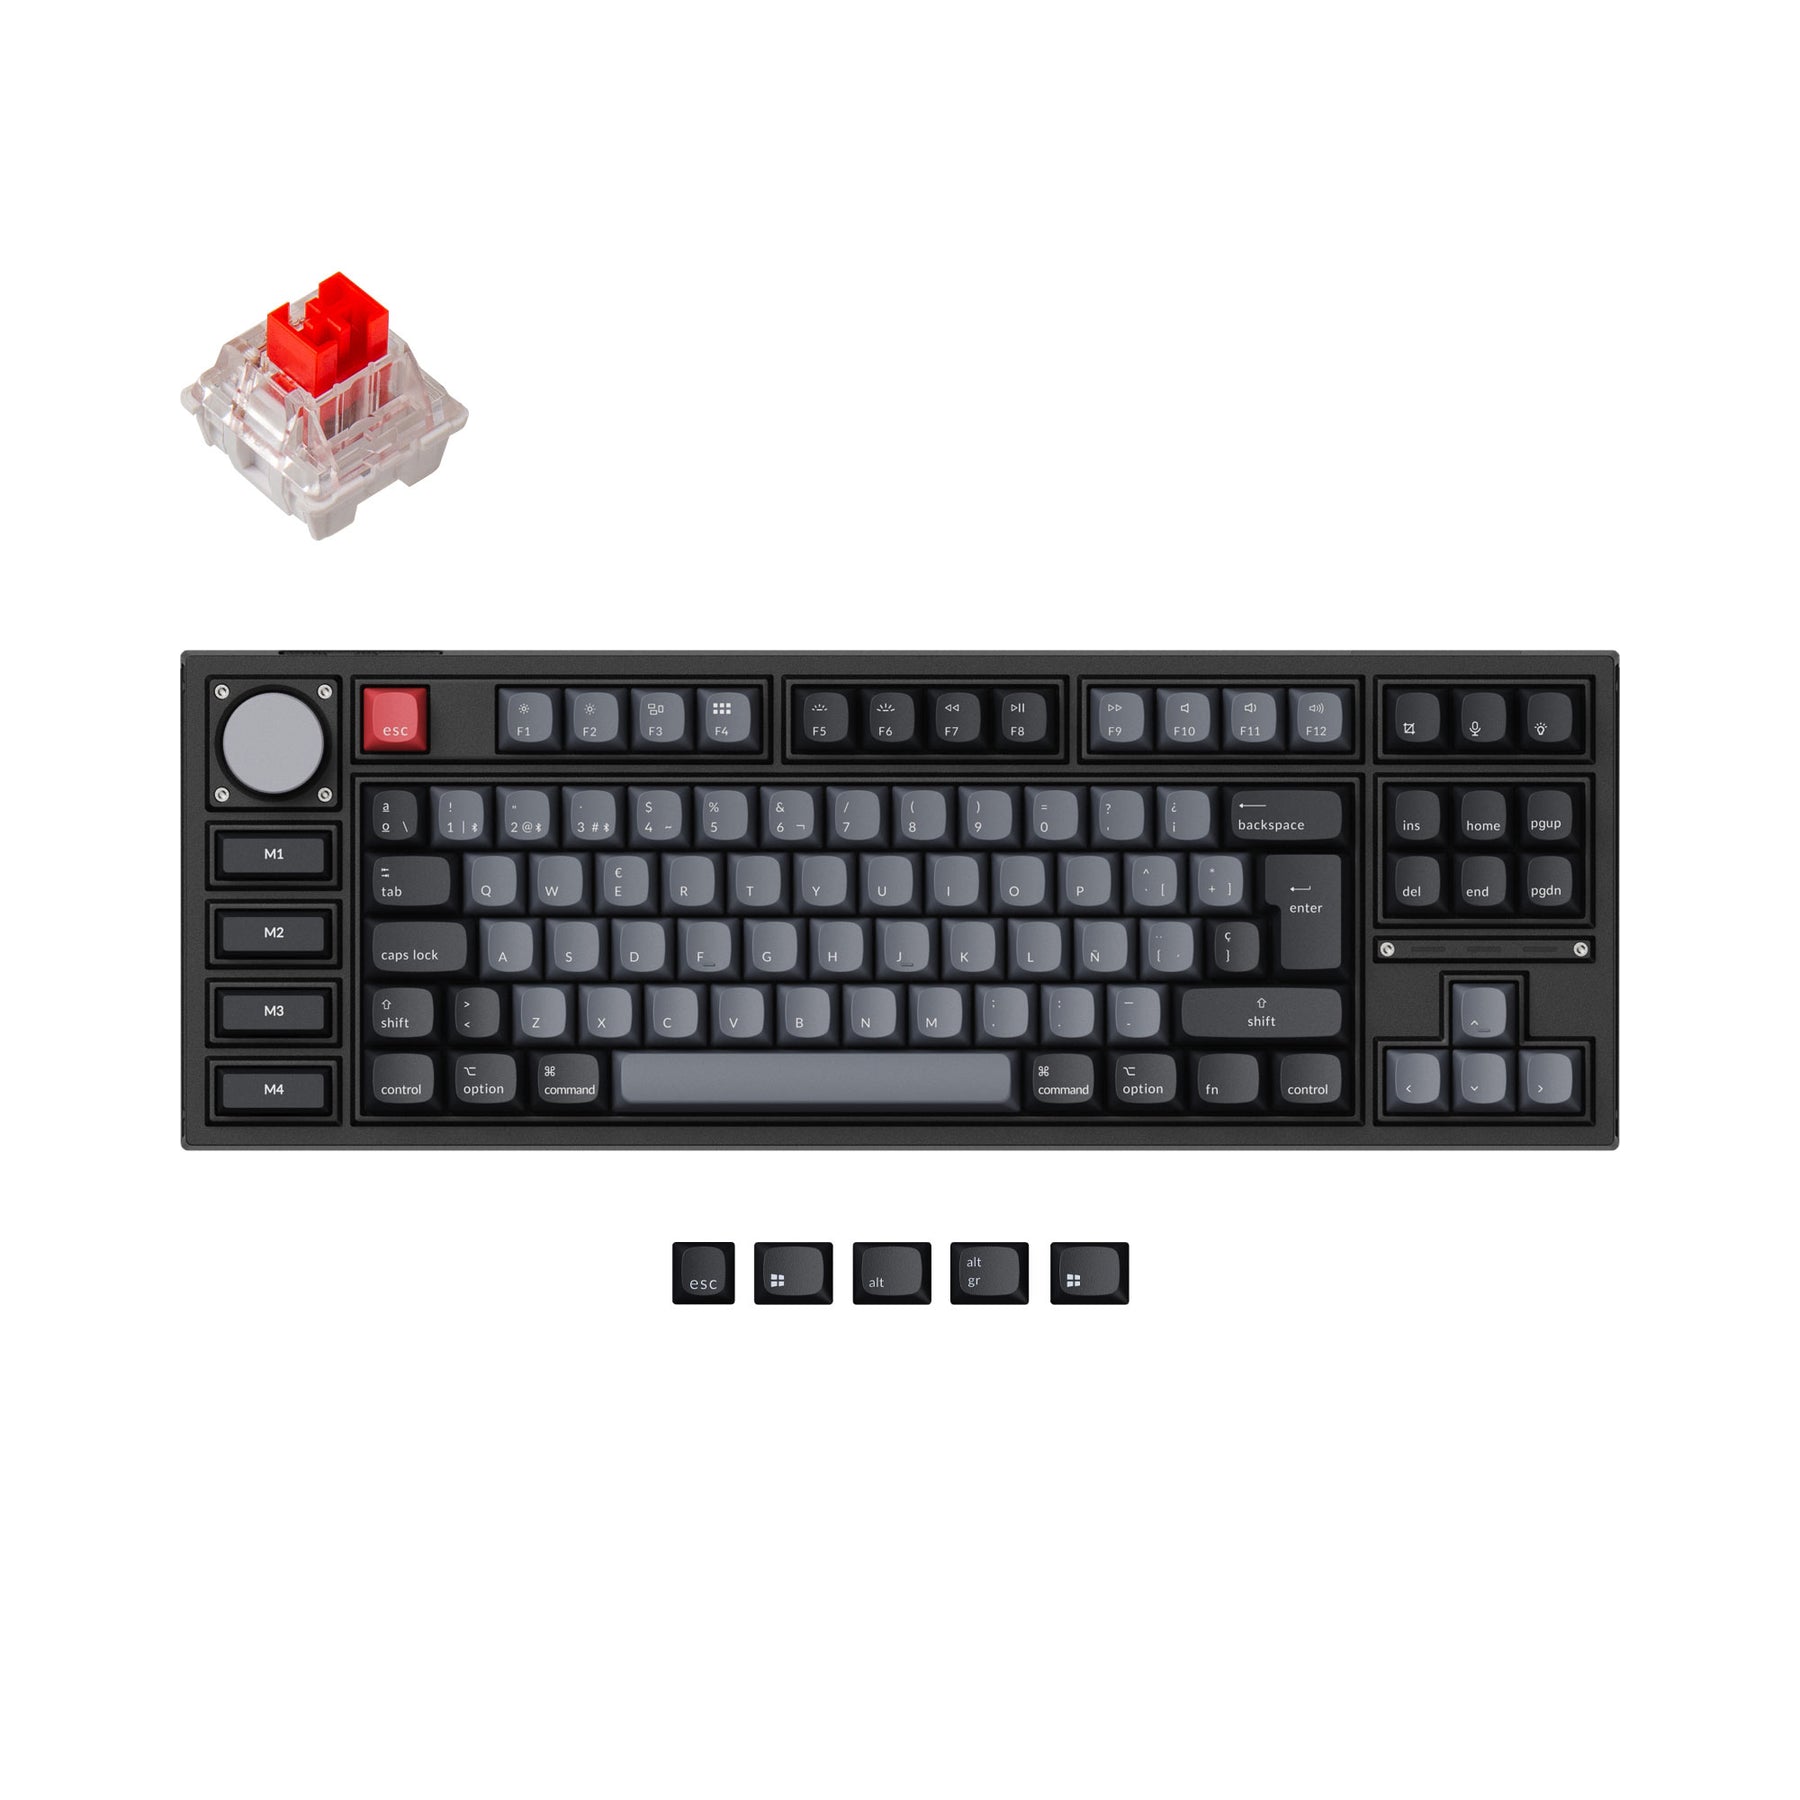 Keychron q3 pro qmk/via coleção de layout iso de teclado mecânico personalizado sem fio